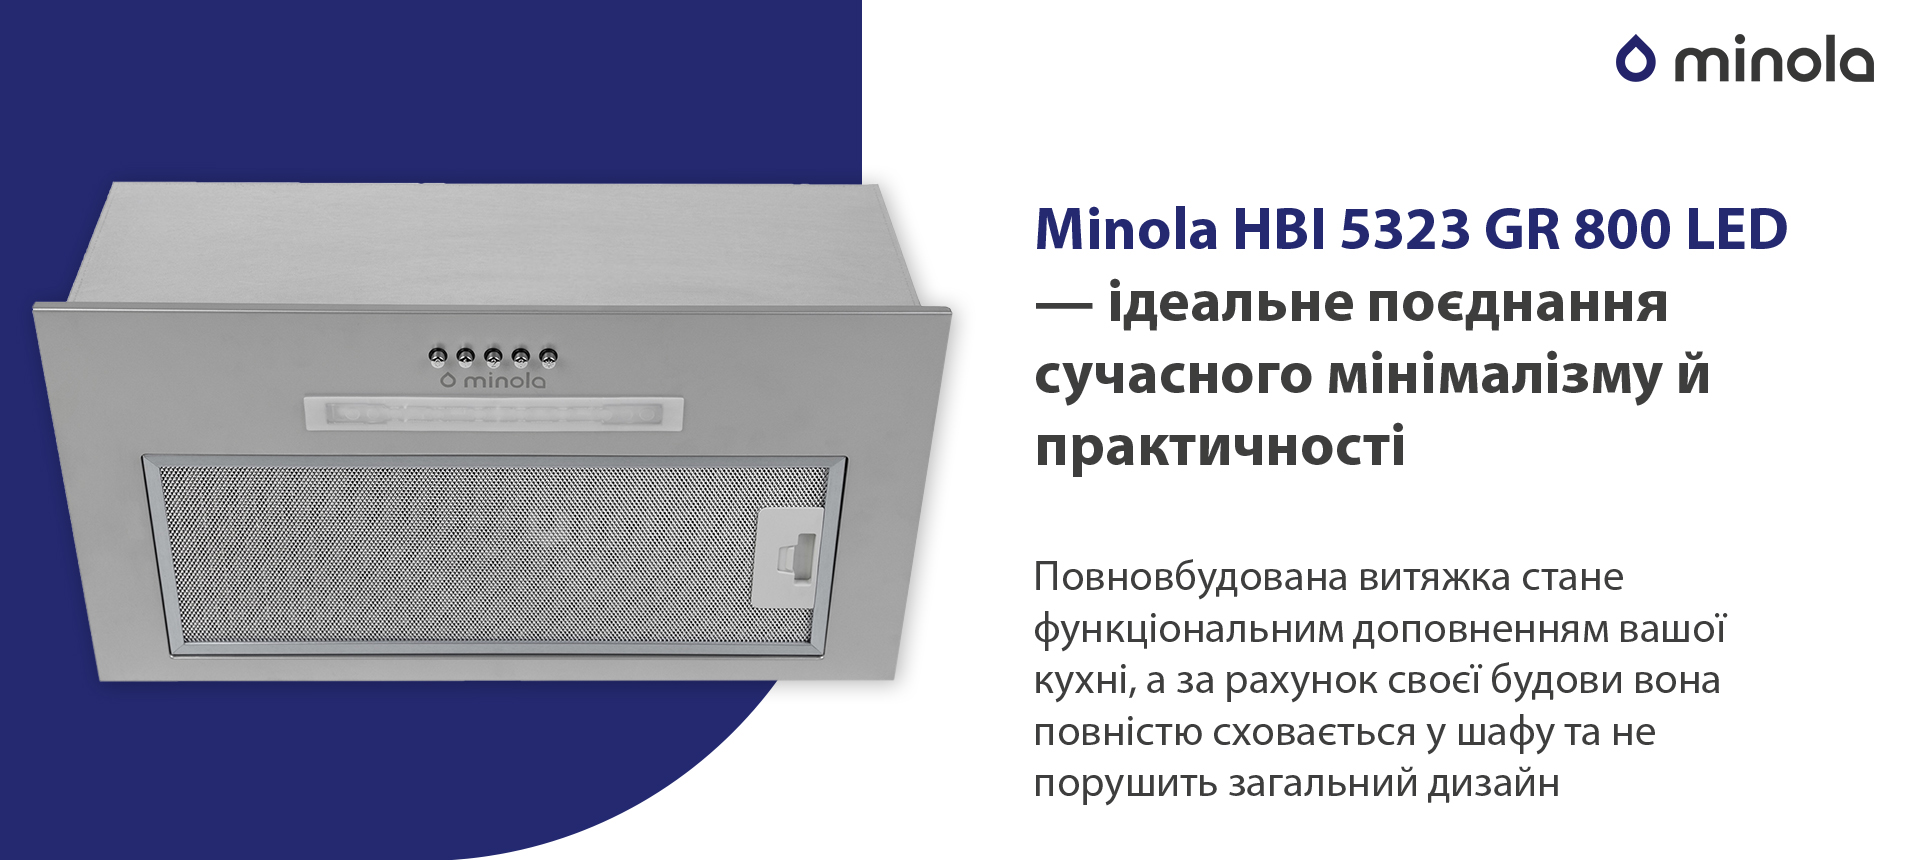 Minola HBI 5323 GR 800 LED в магазине в Киеве - фото 10